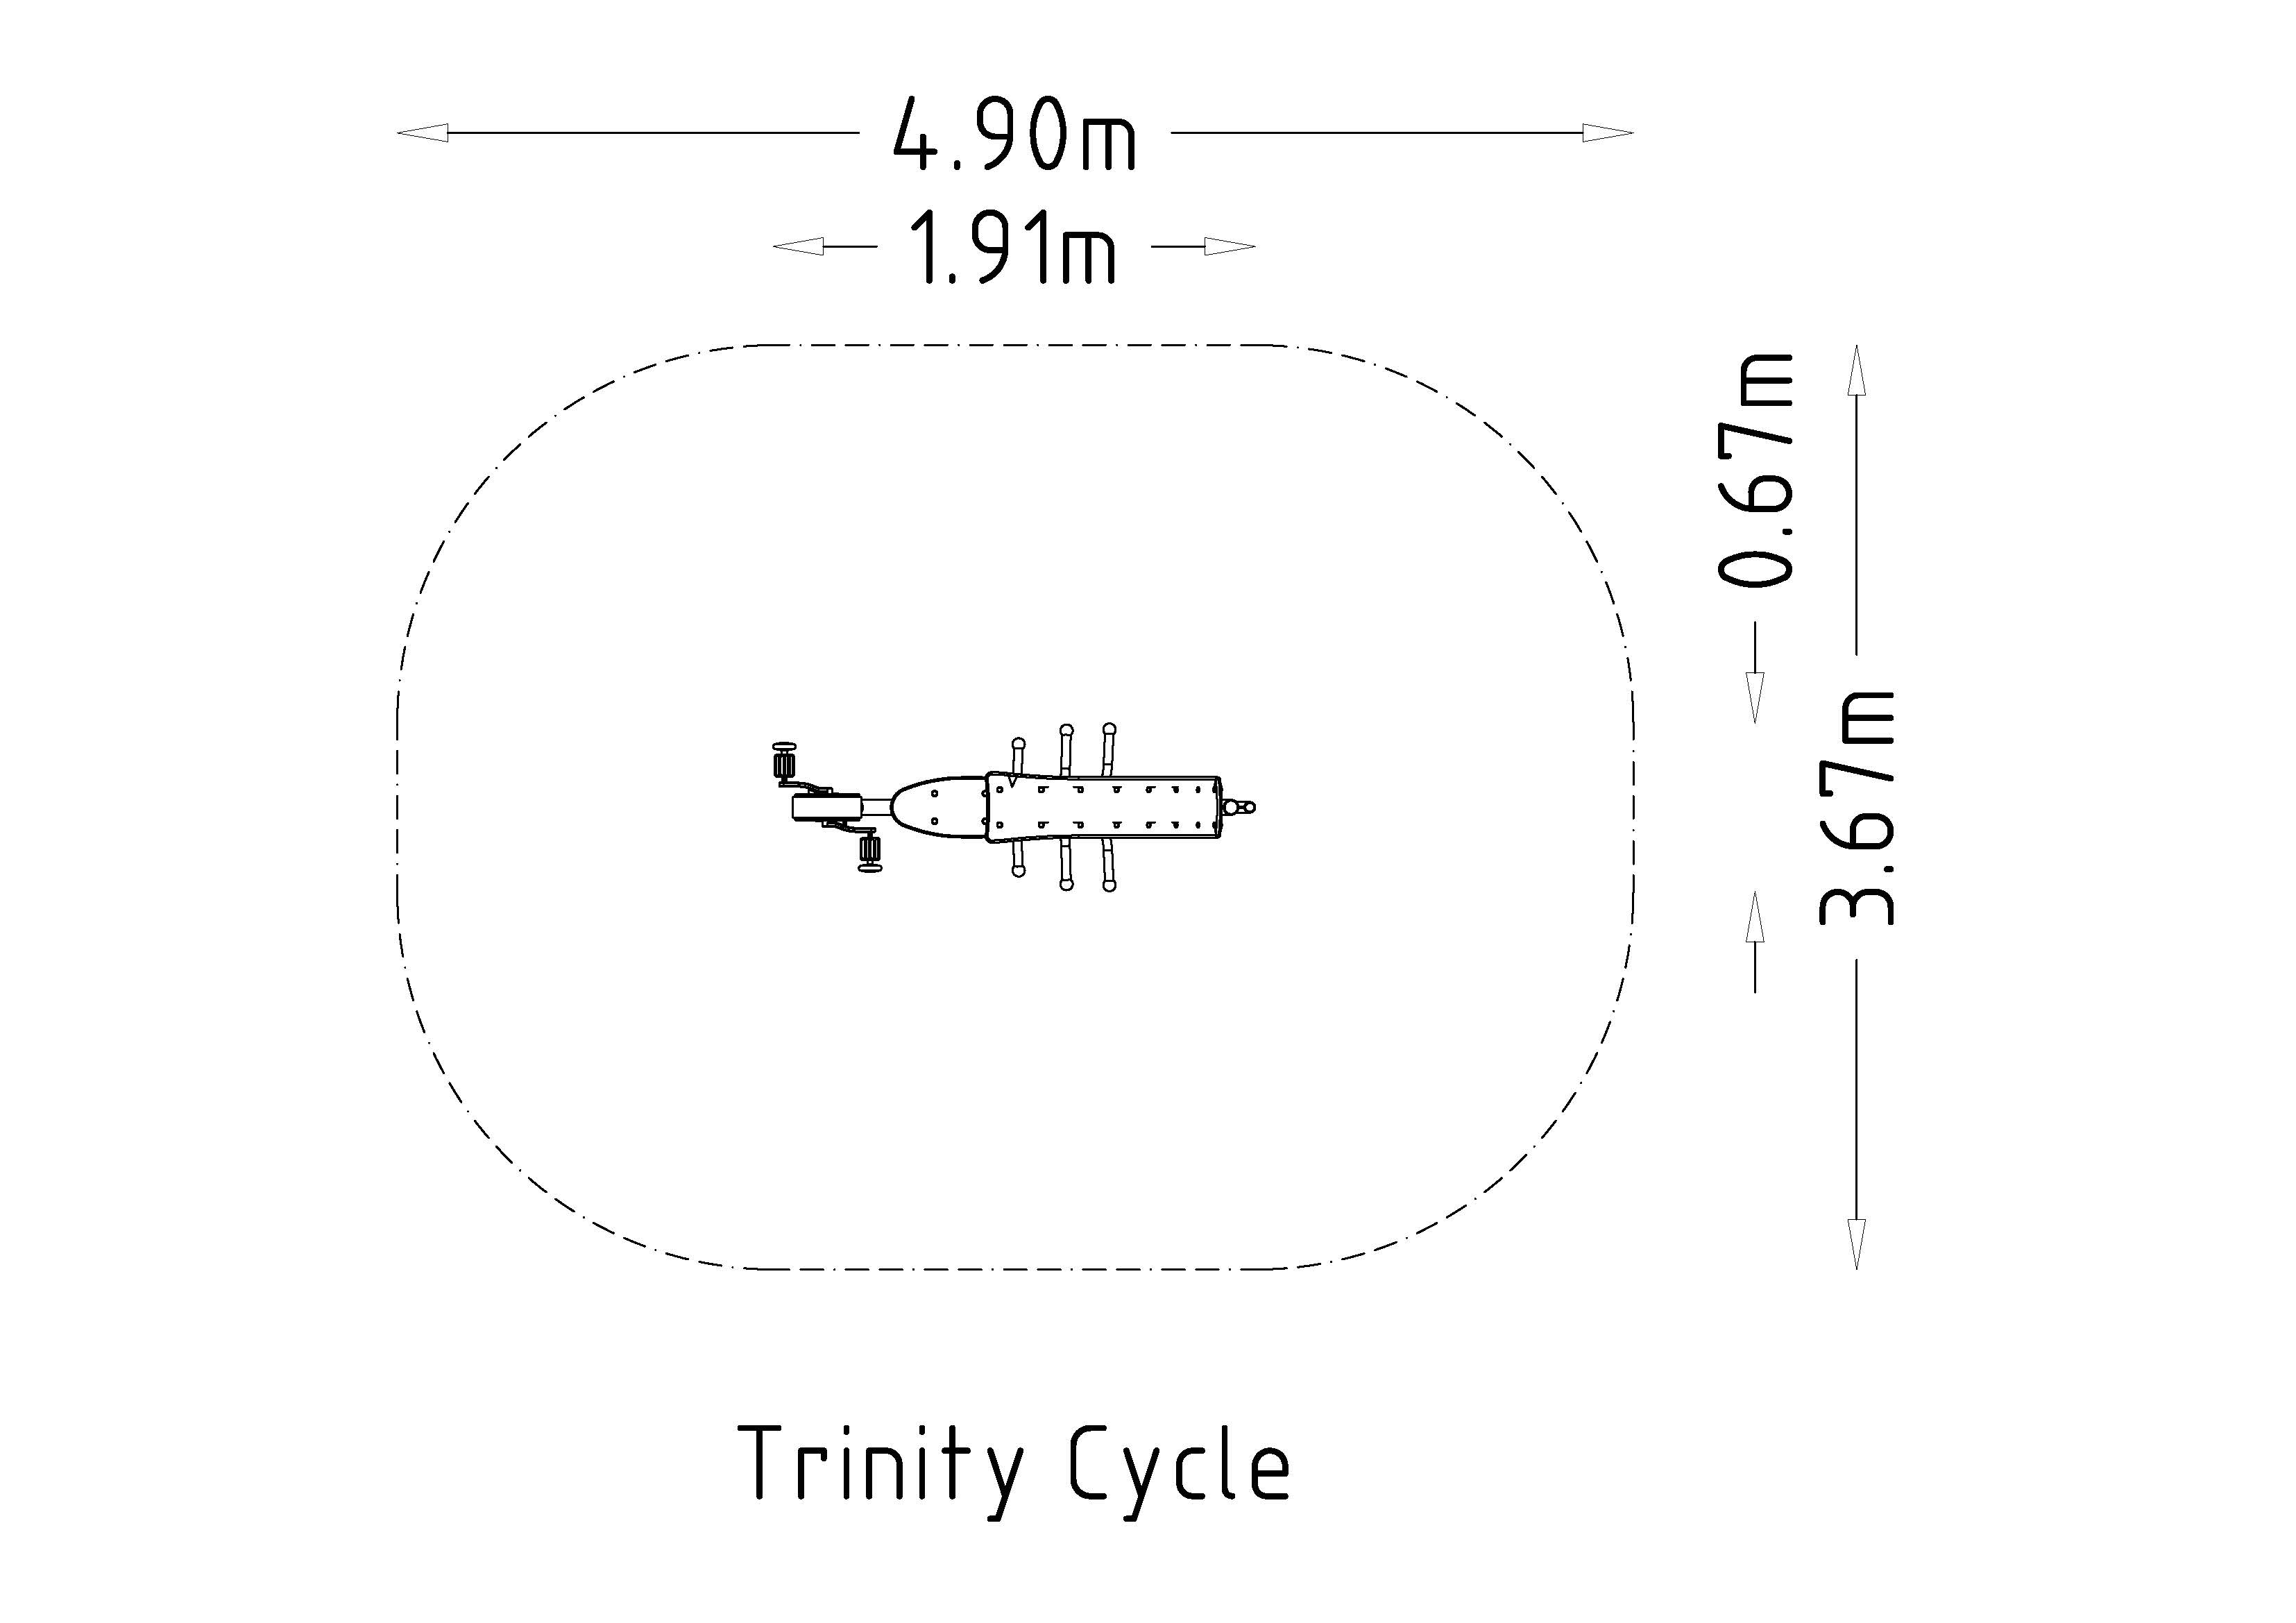 HAGS Trinity Cycle